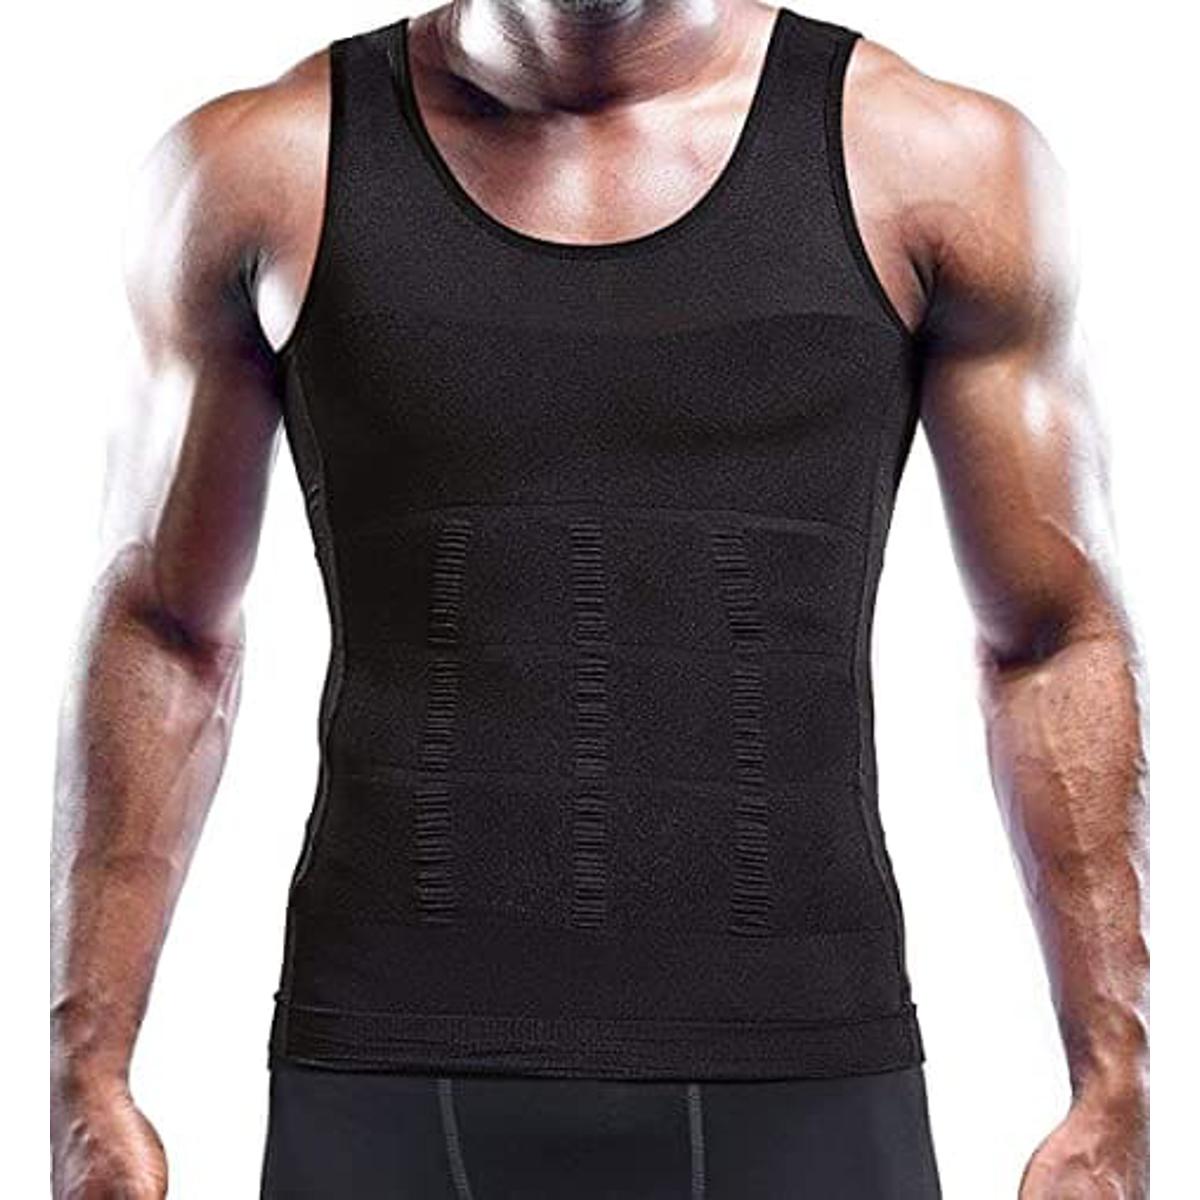 Slim 'n Lift Slimming Vest for Men (Black) - slim belt vest shaper for Man  - Mens slimming Vest help to compress the tummy and chest fat -Vest for